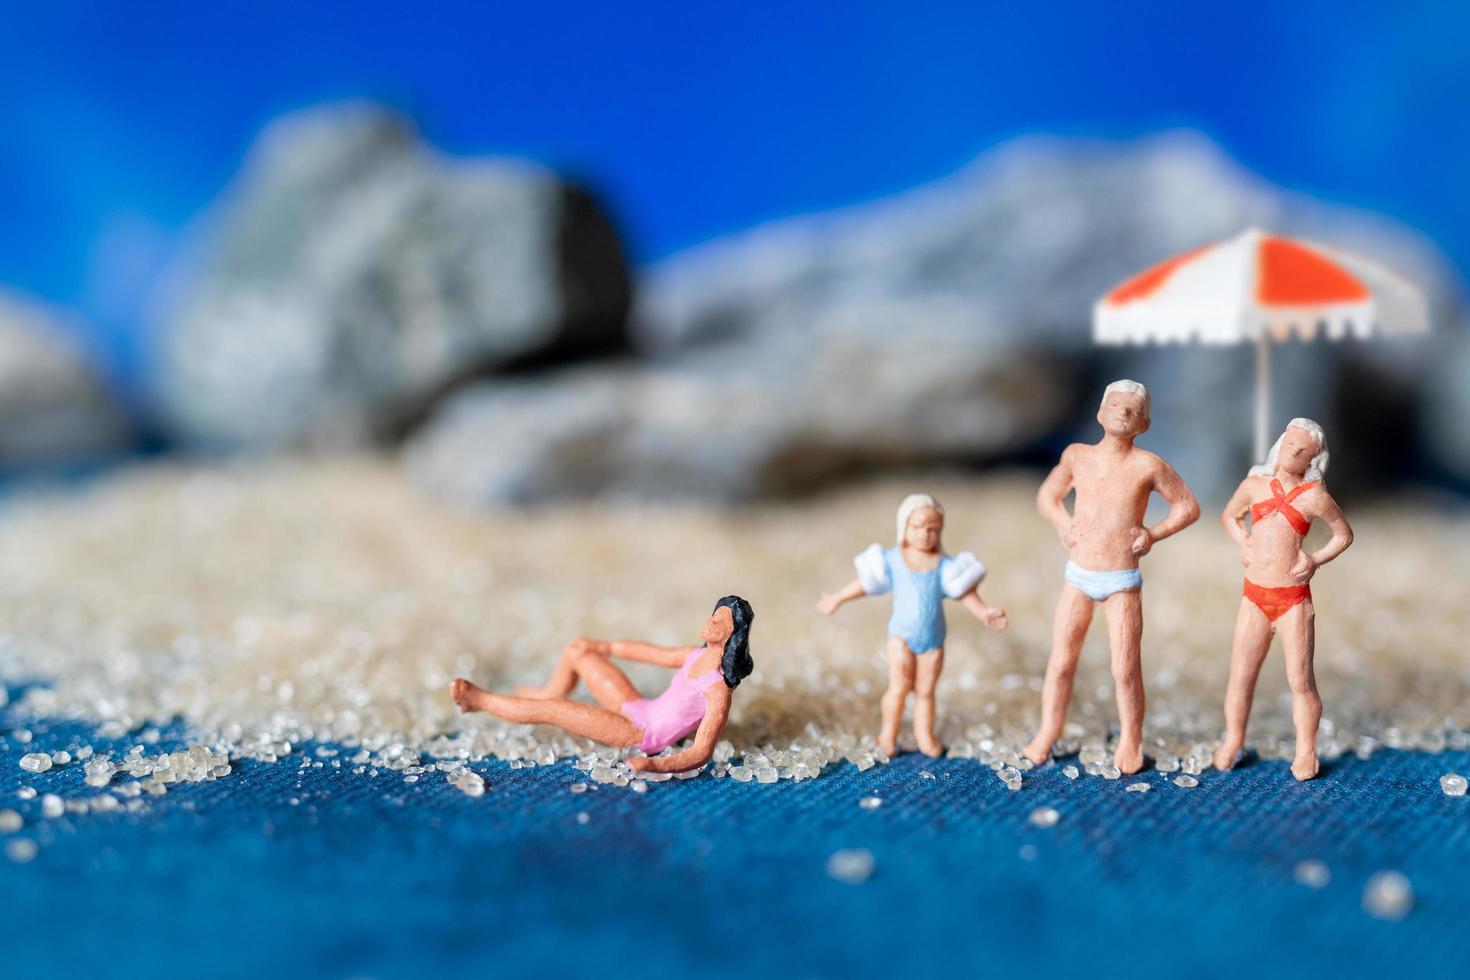 Gente en miniatura vistiendo trajes de baño relajándose en la playa con un fondo azul, concepto de verano foto